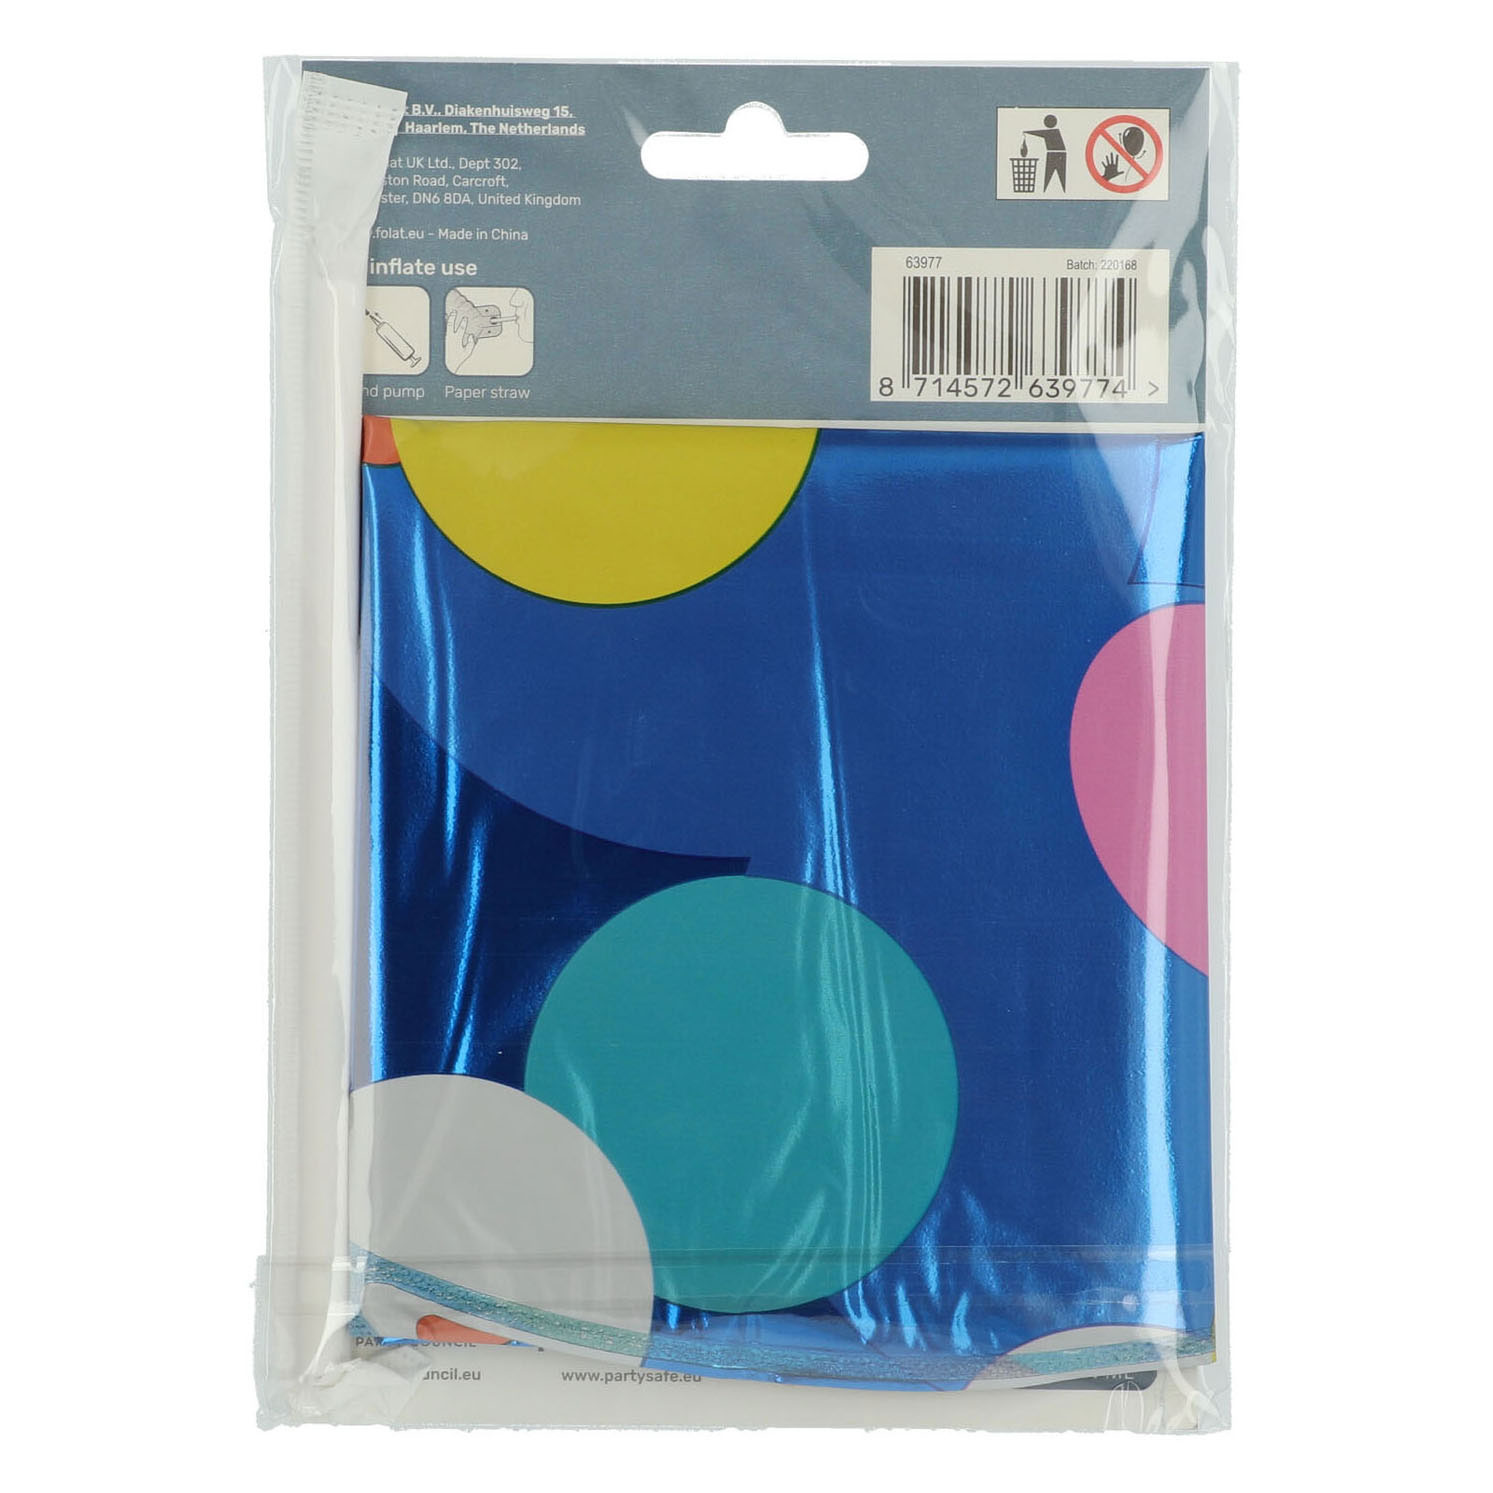 Ballon aluminium debout à pois colorés numéro 7 - 72 cm